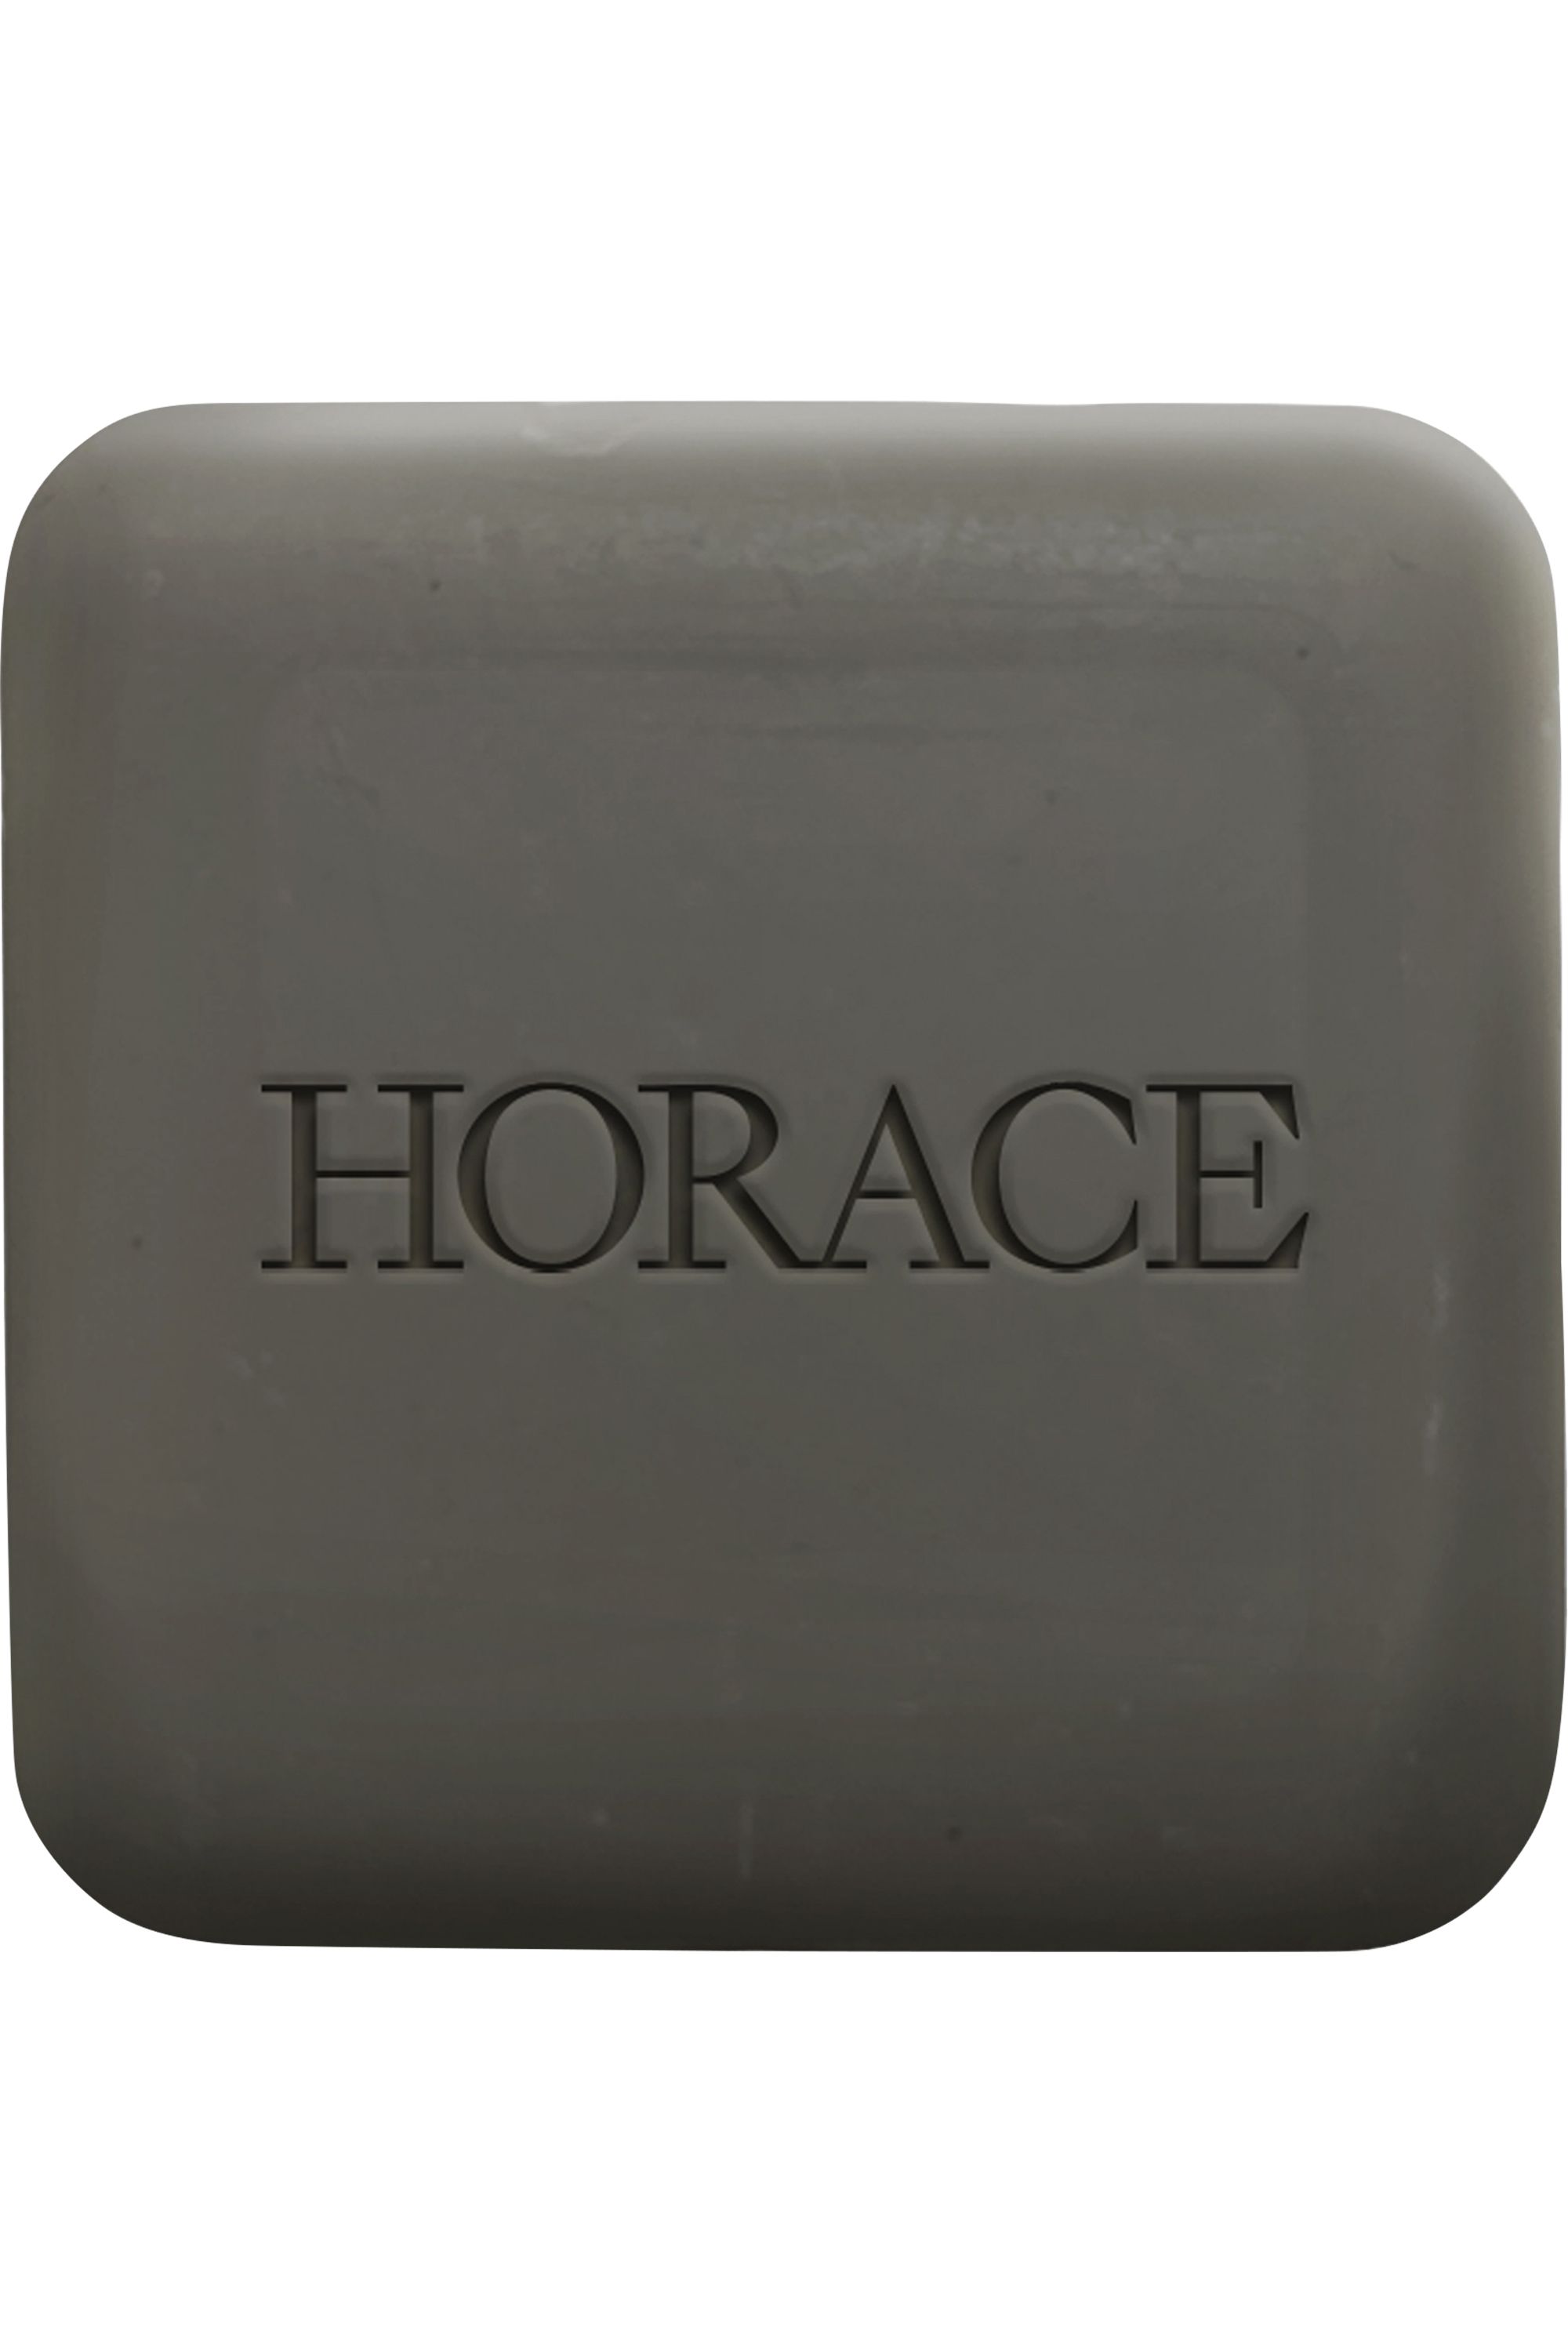 Nouveau Déodorant Horace : une excellente alternative naturelle